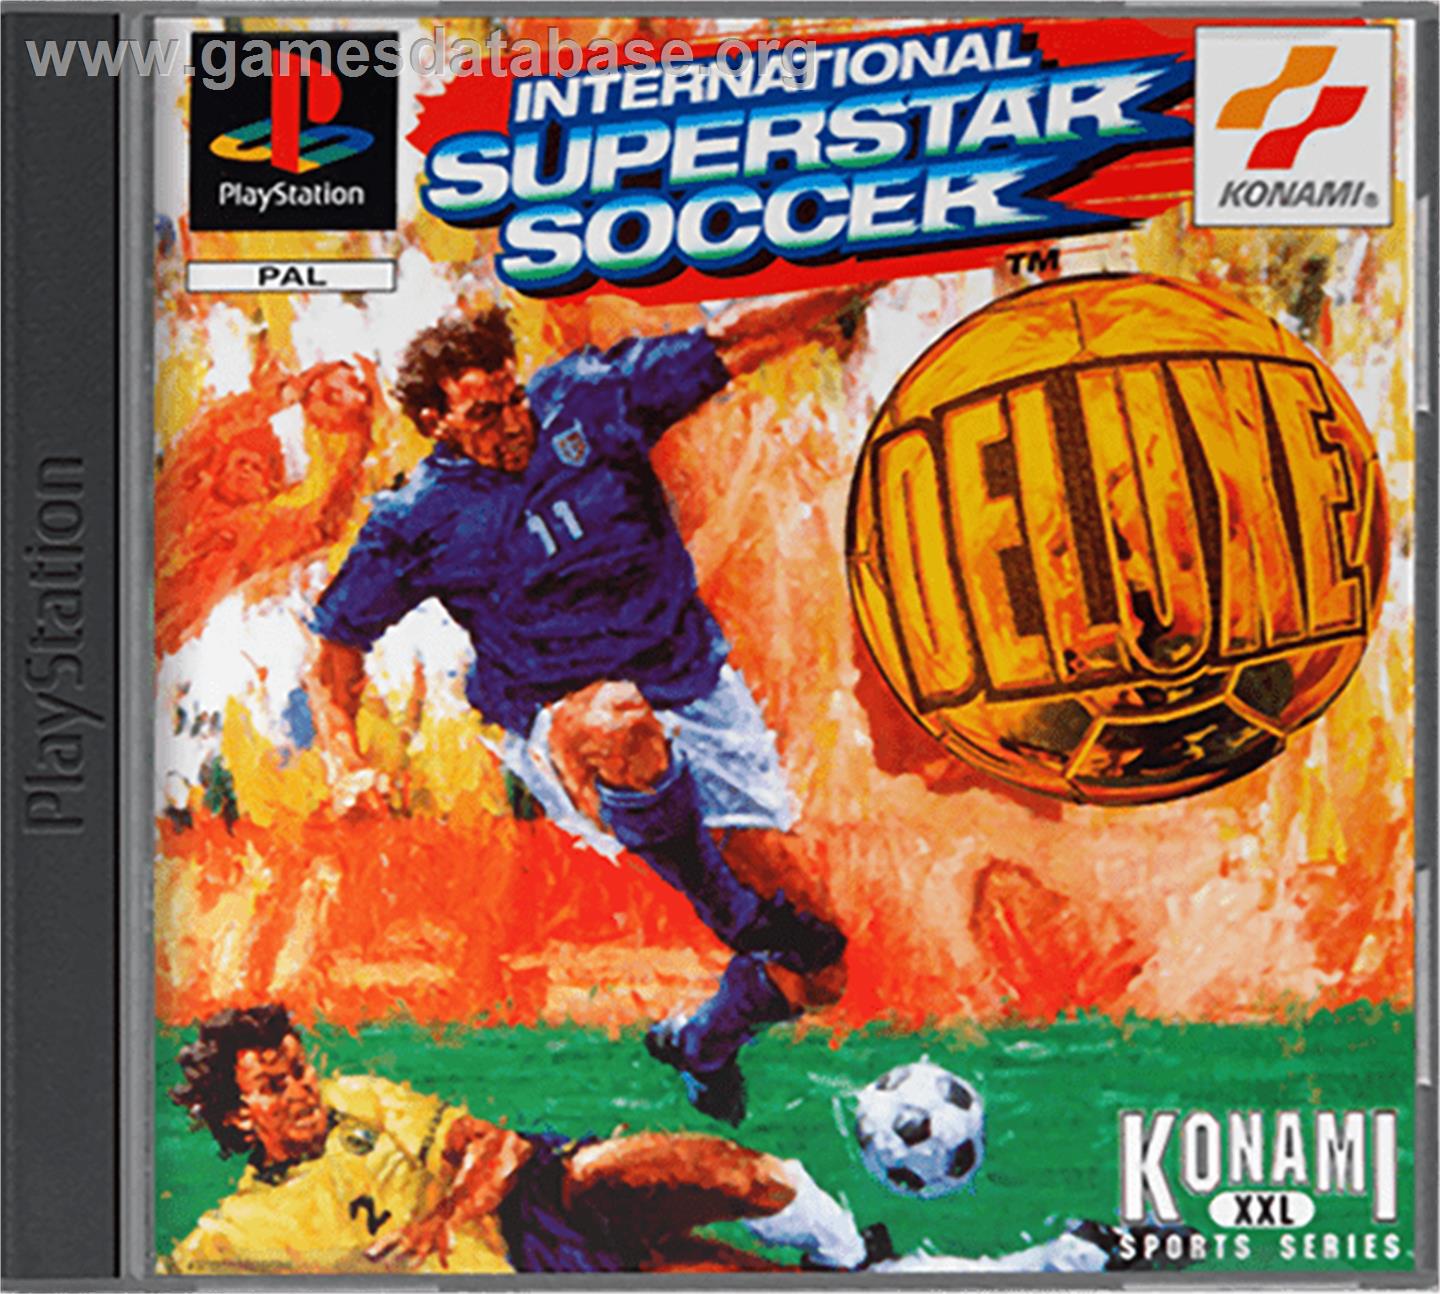 International Superstar Soccer Deluxe - Sony Playstation - Artwork - Box